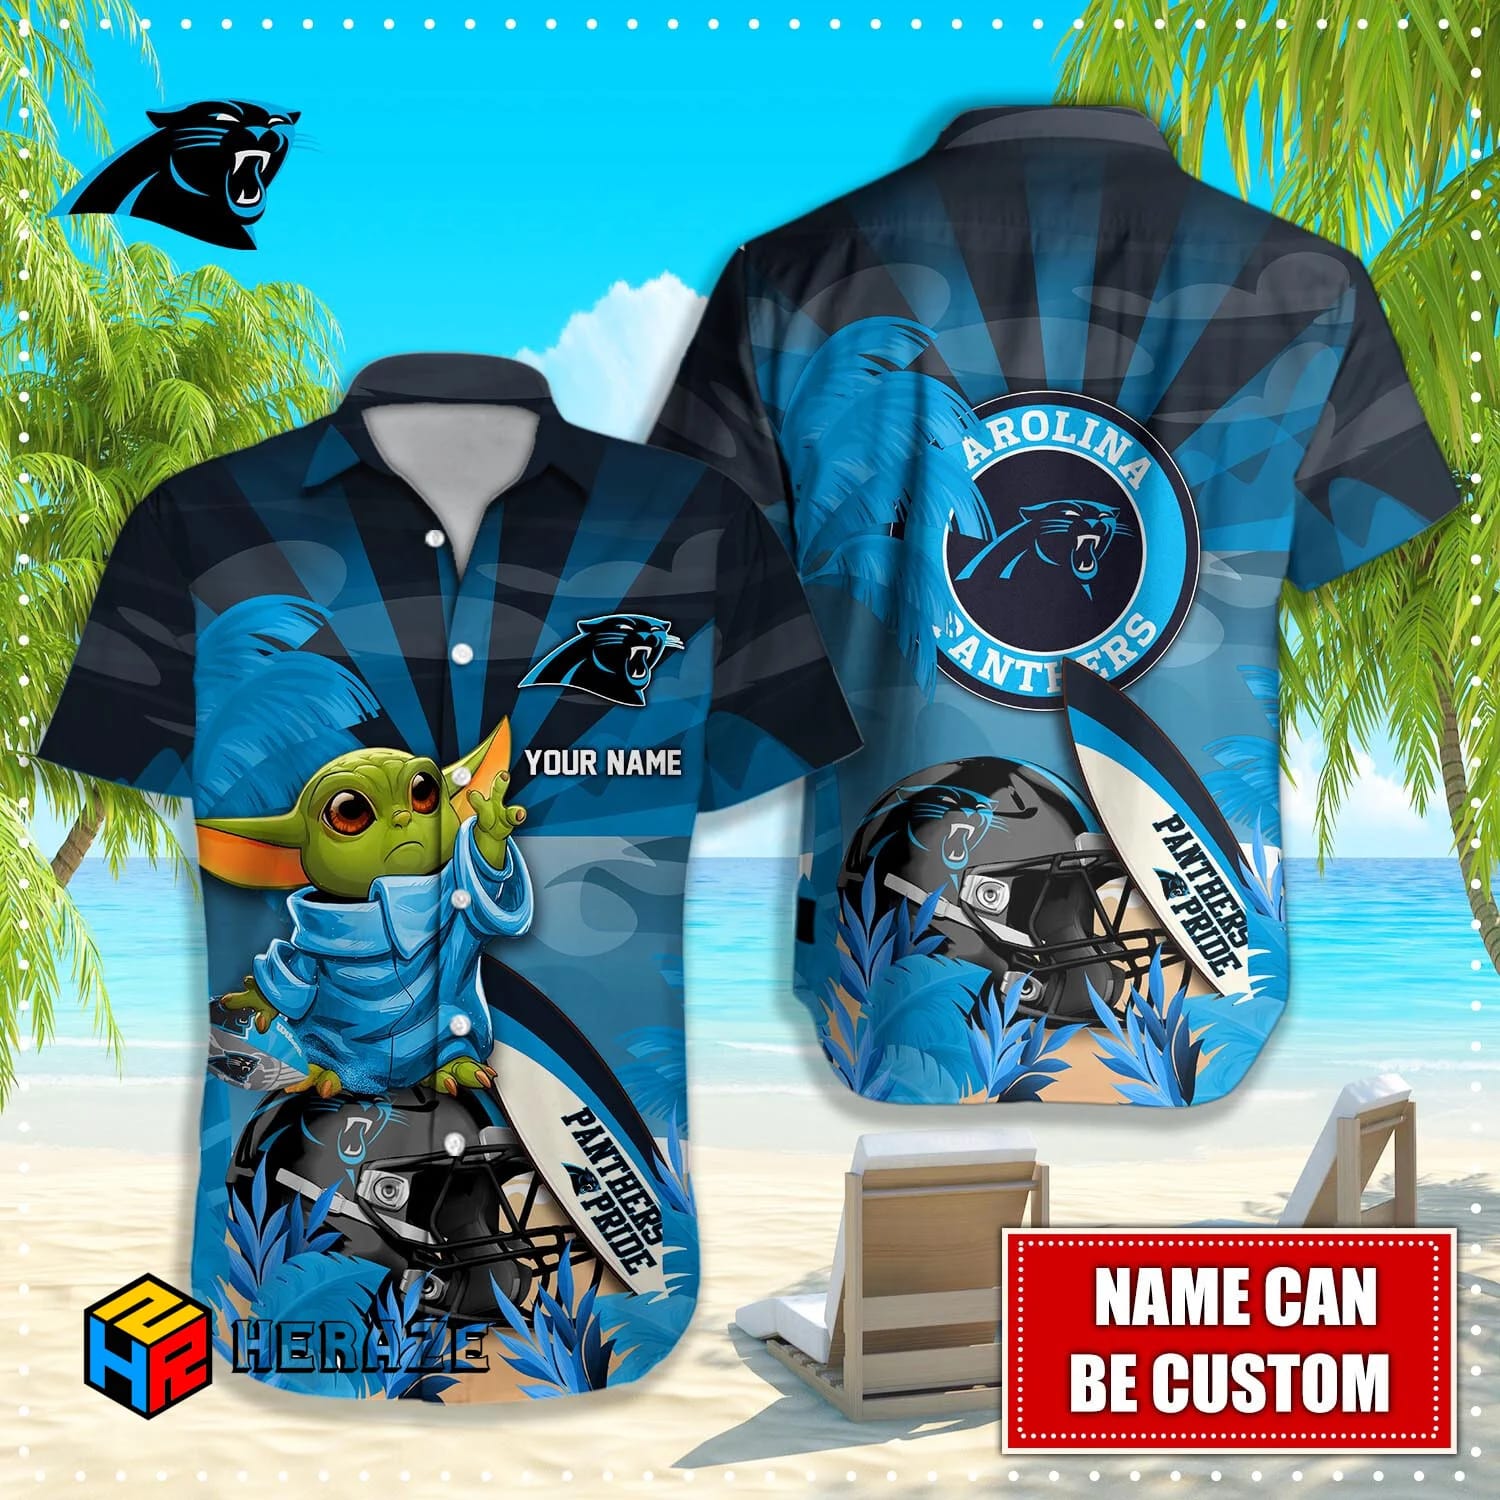 Custom Name Carolina Panthers NFL Aloha Hawaiian Shirt Fwdbsi